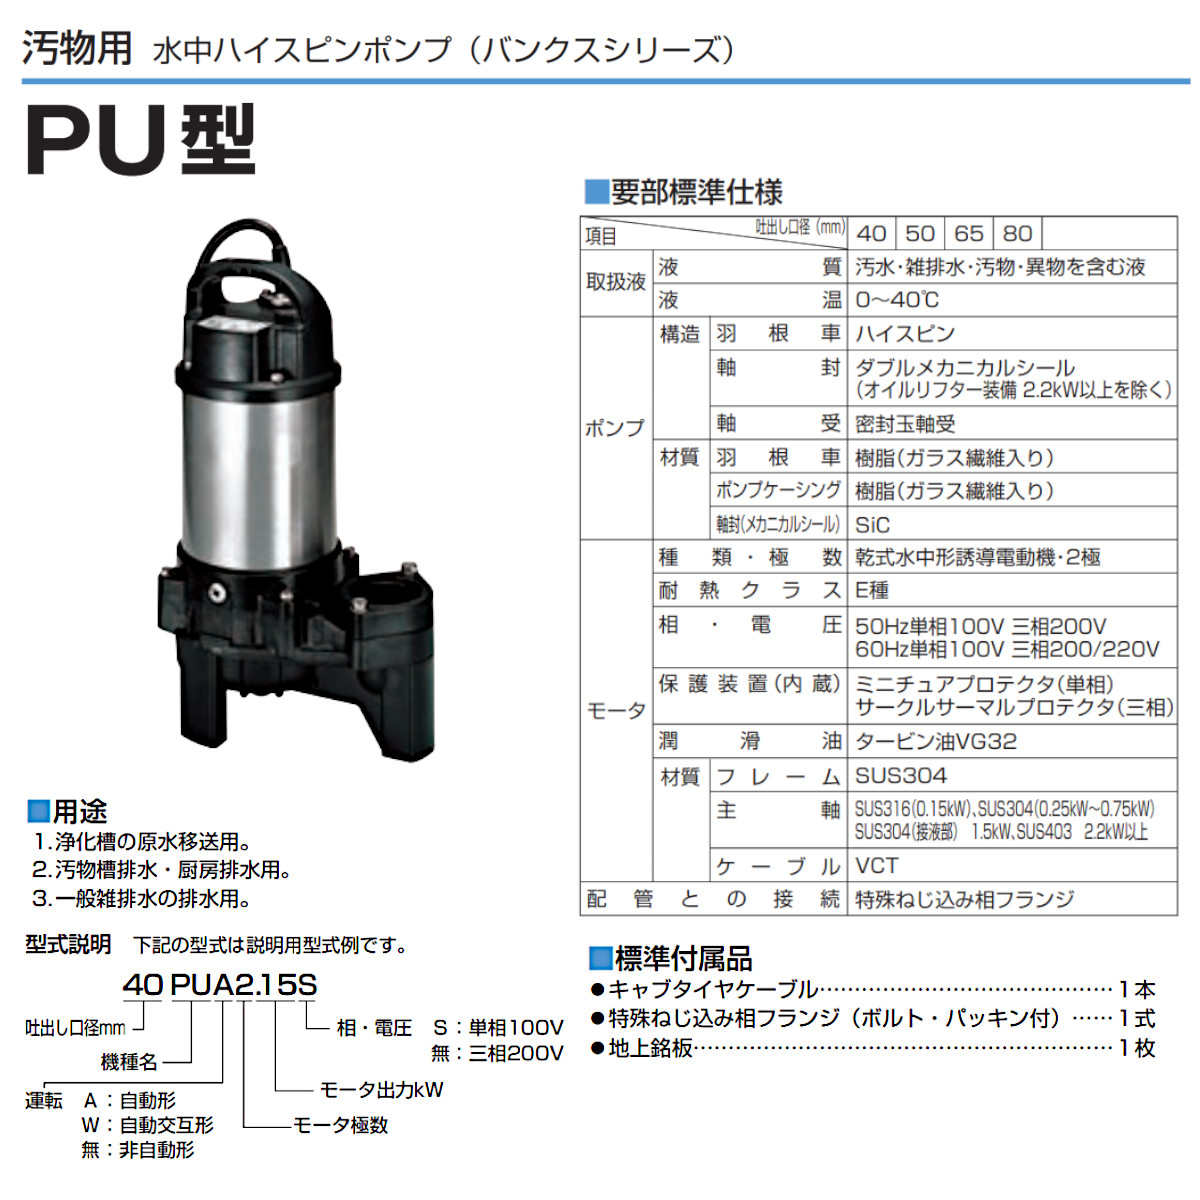 ツルミ 汚物用 水中ポンプ 40PU2.25S / 40PU2.25 バンクスシリーズ